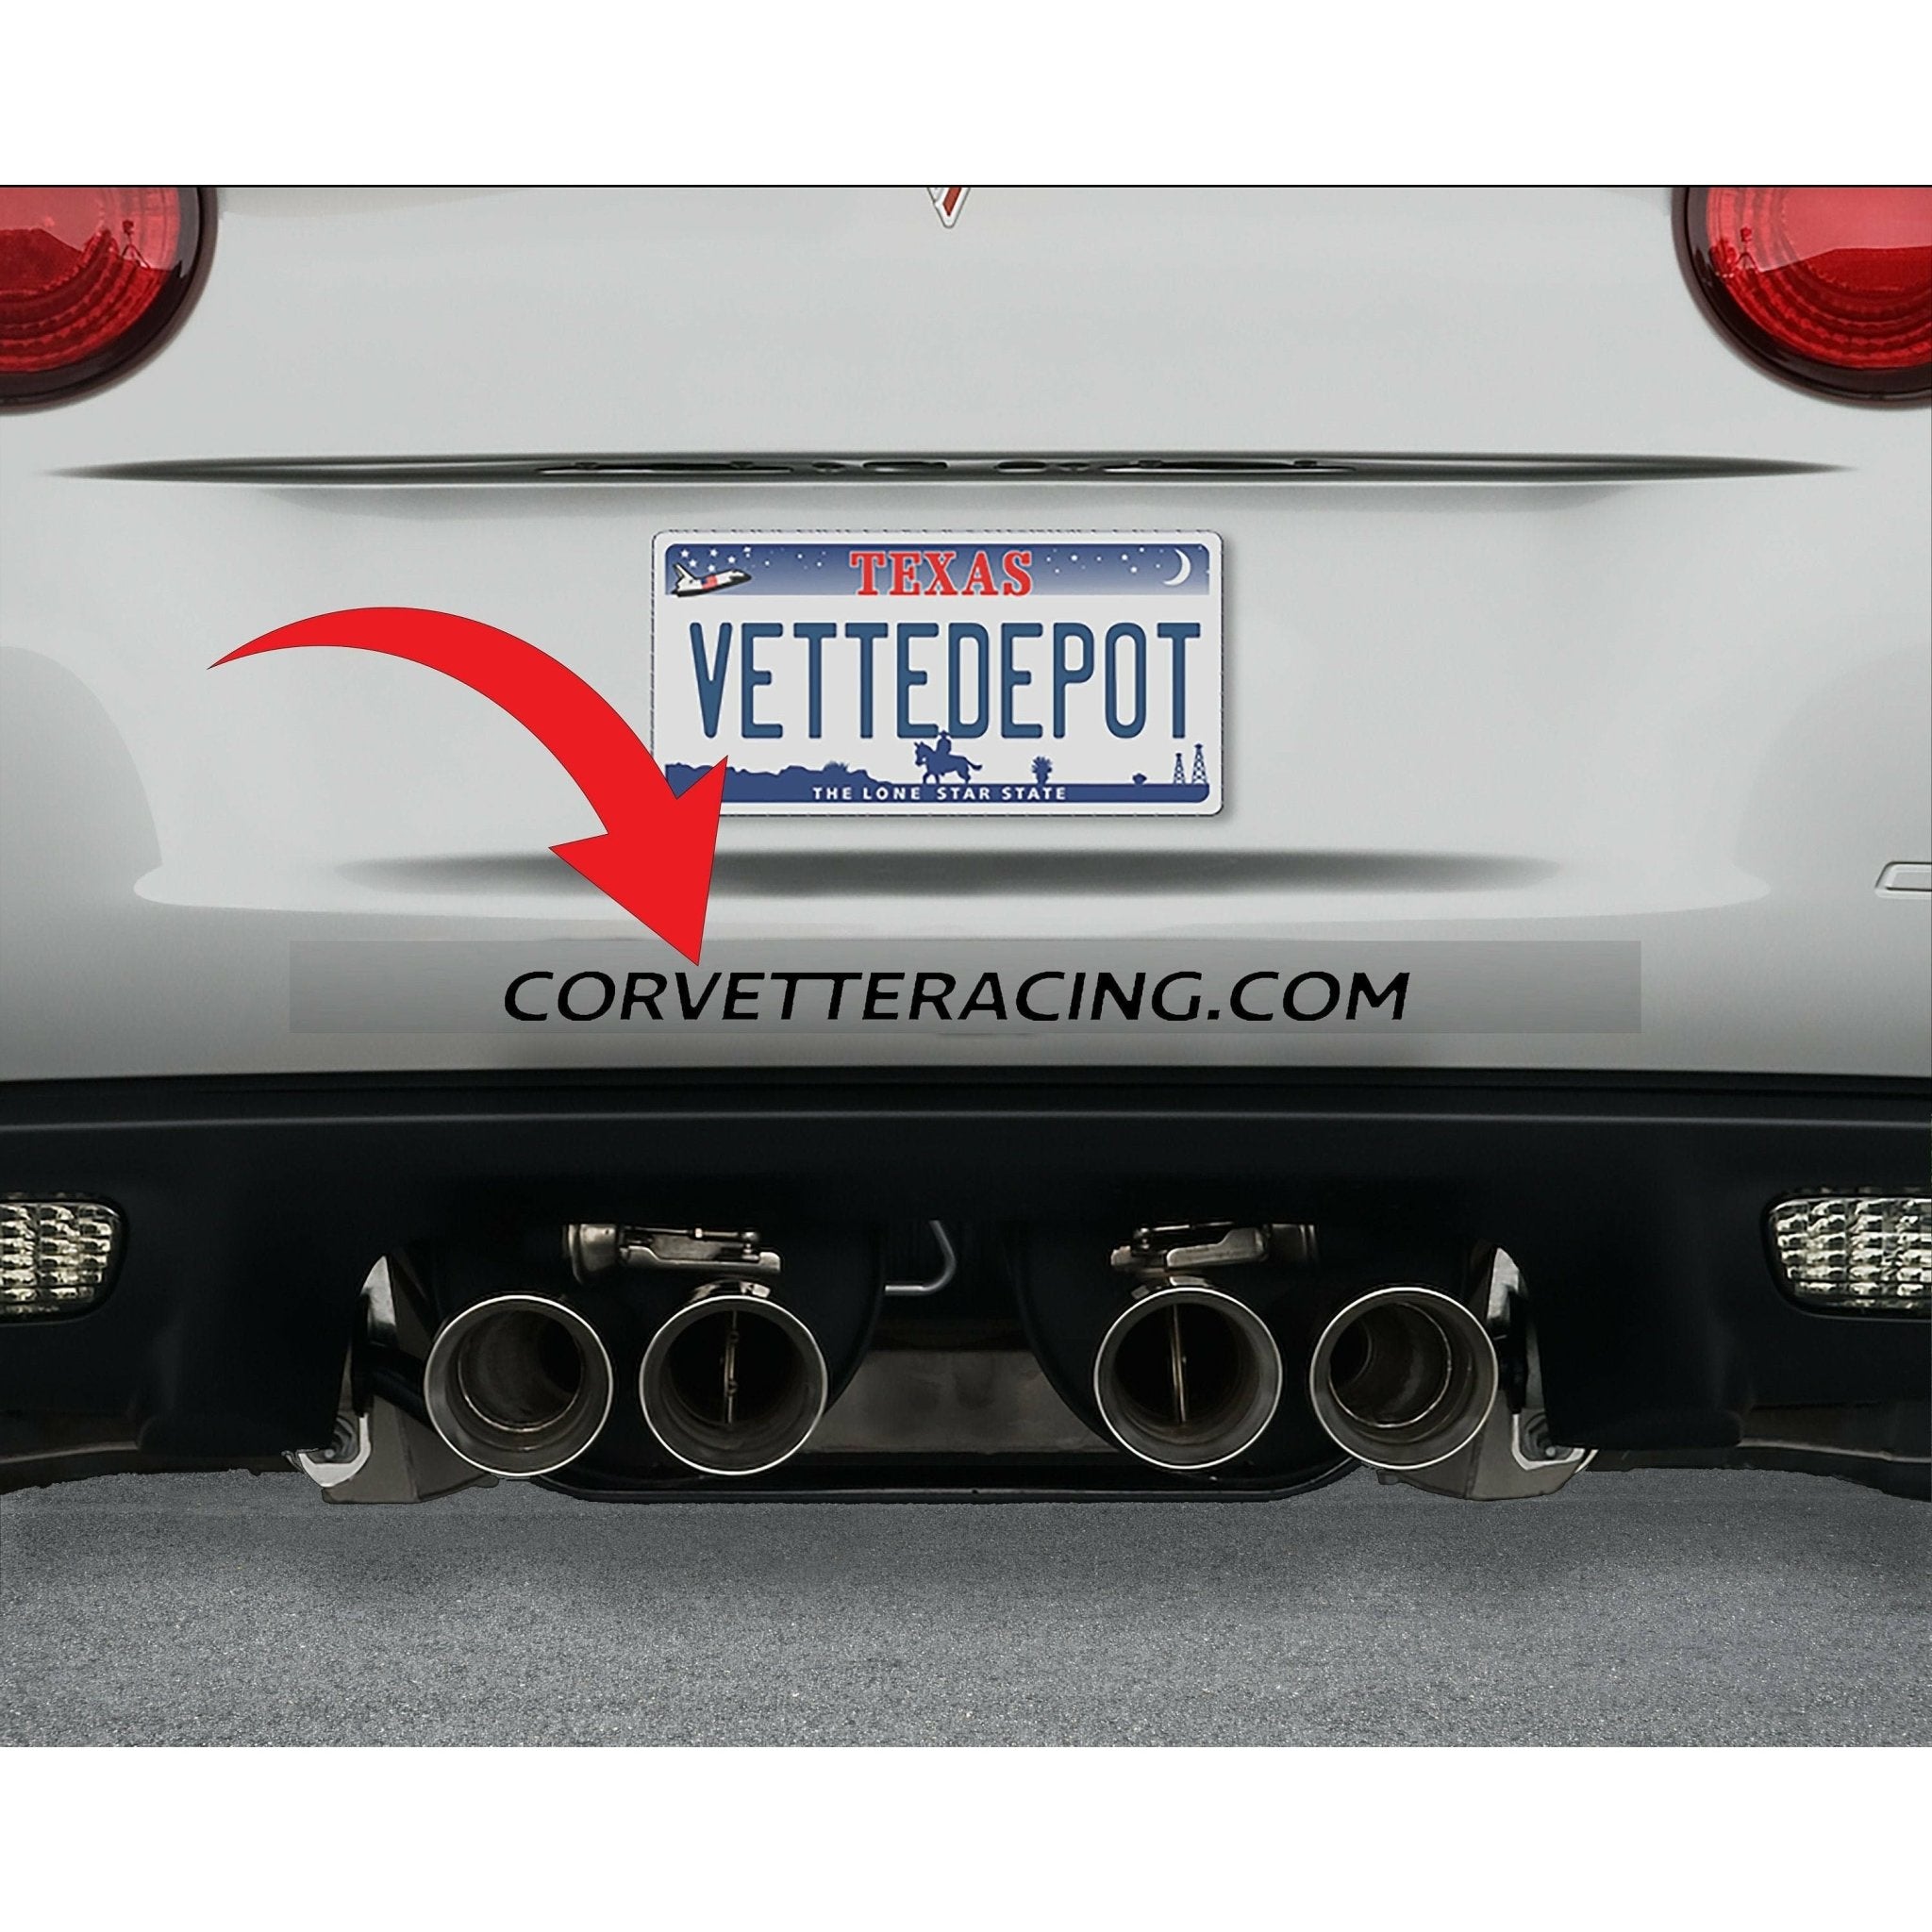 CorvetteRacing.com Vinyl Car Decal Stickers Five Colors - Vette1 - Body Decals